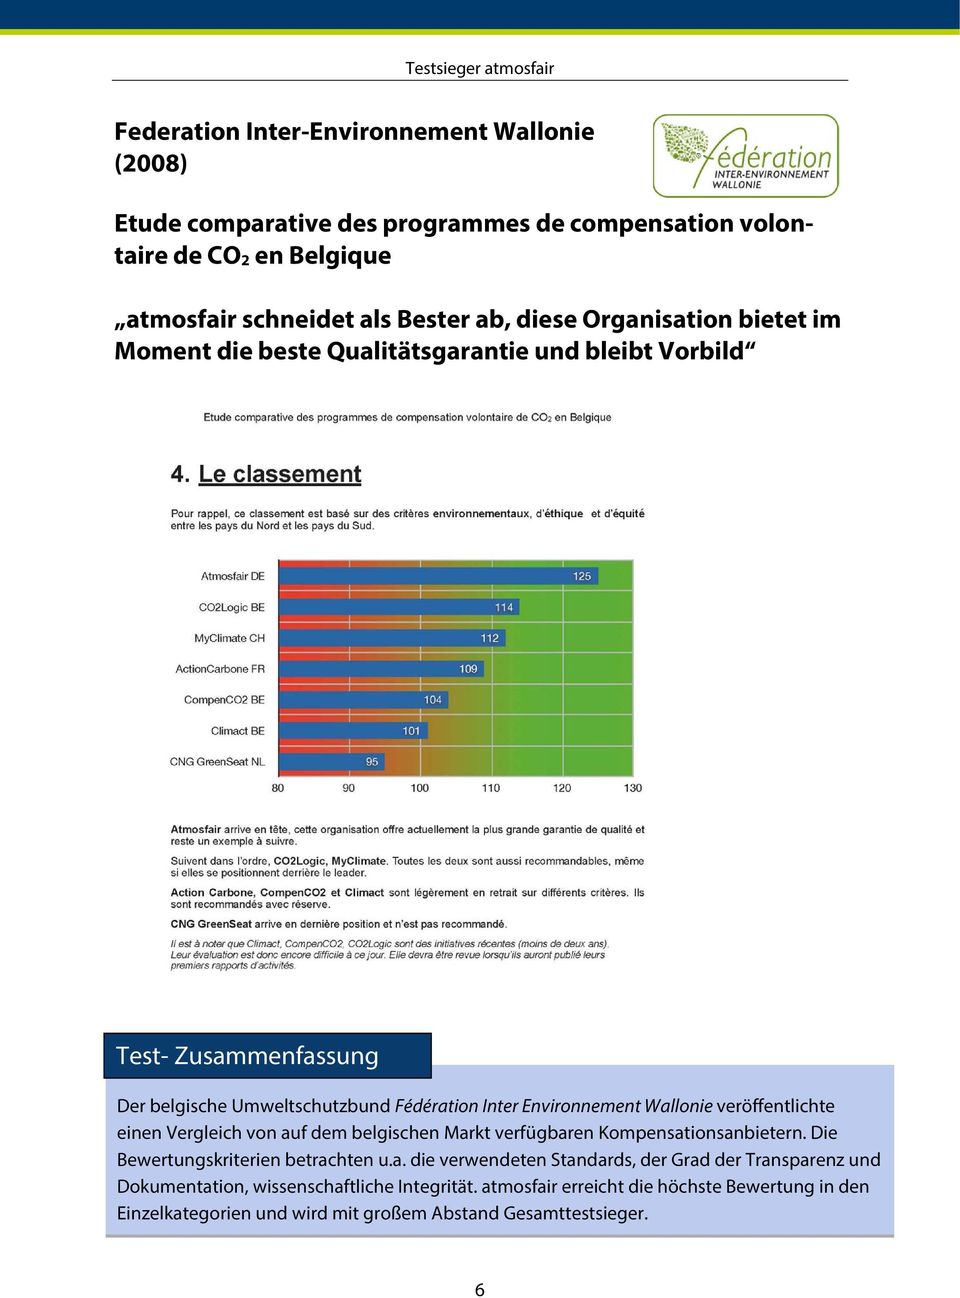 einen Vergleich von auf dem belgischen Markt verfügbaren Kompensationsanbietern. Die Bewertungskriterien betrachten u.a. die verwendeten Standards, der Grad der Transparenz und Dokumentation, wissenschaftliche Integrität.